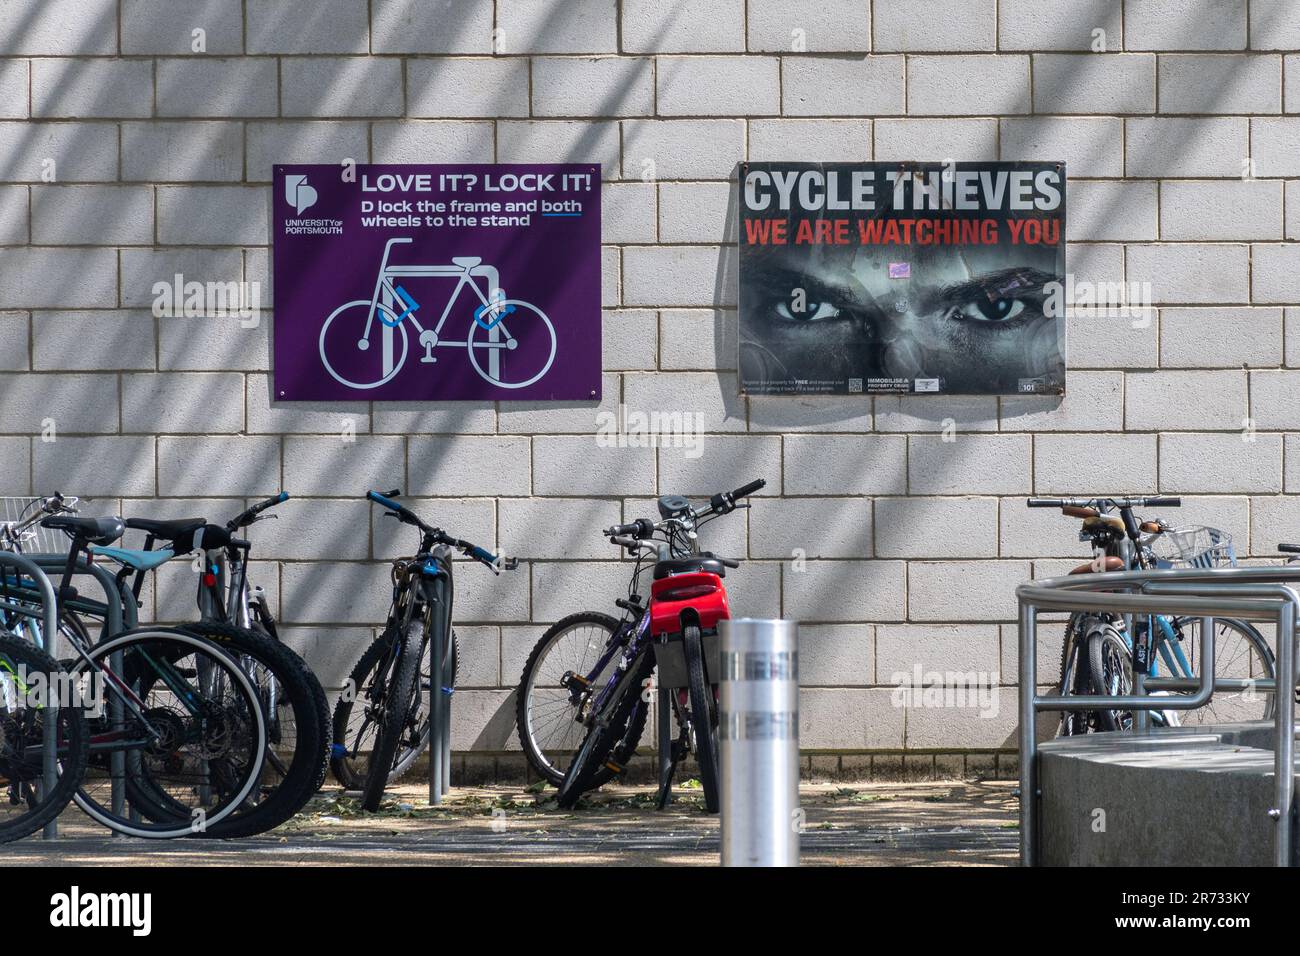 Porte-vélos, bicyclettes, vélos, vélos avec panneaux de sécurité notices d'information en dehors de l'Université de Portsmouth, Hampshire, Angleterre, Royaume-Uni Banque D'Images